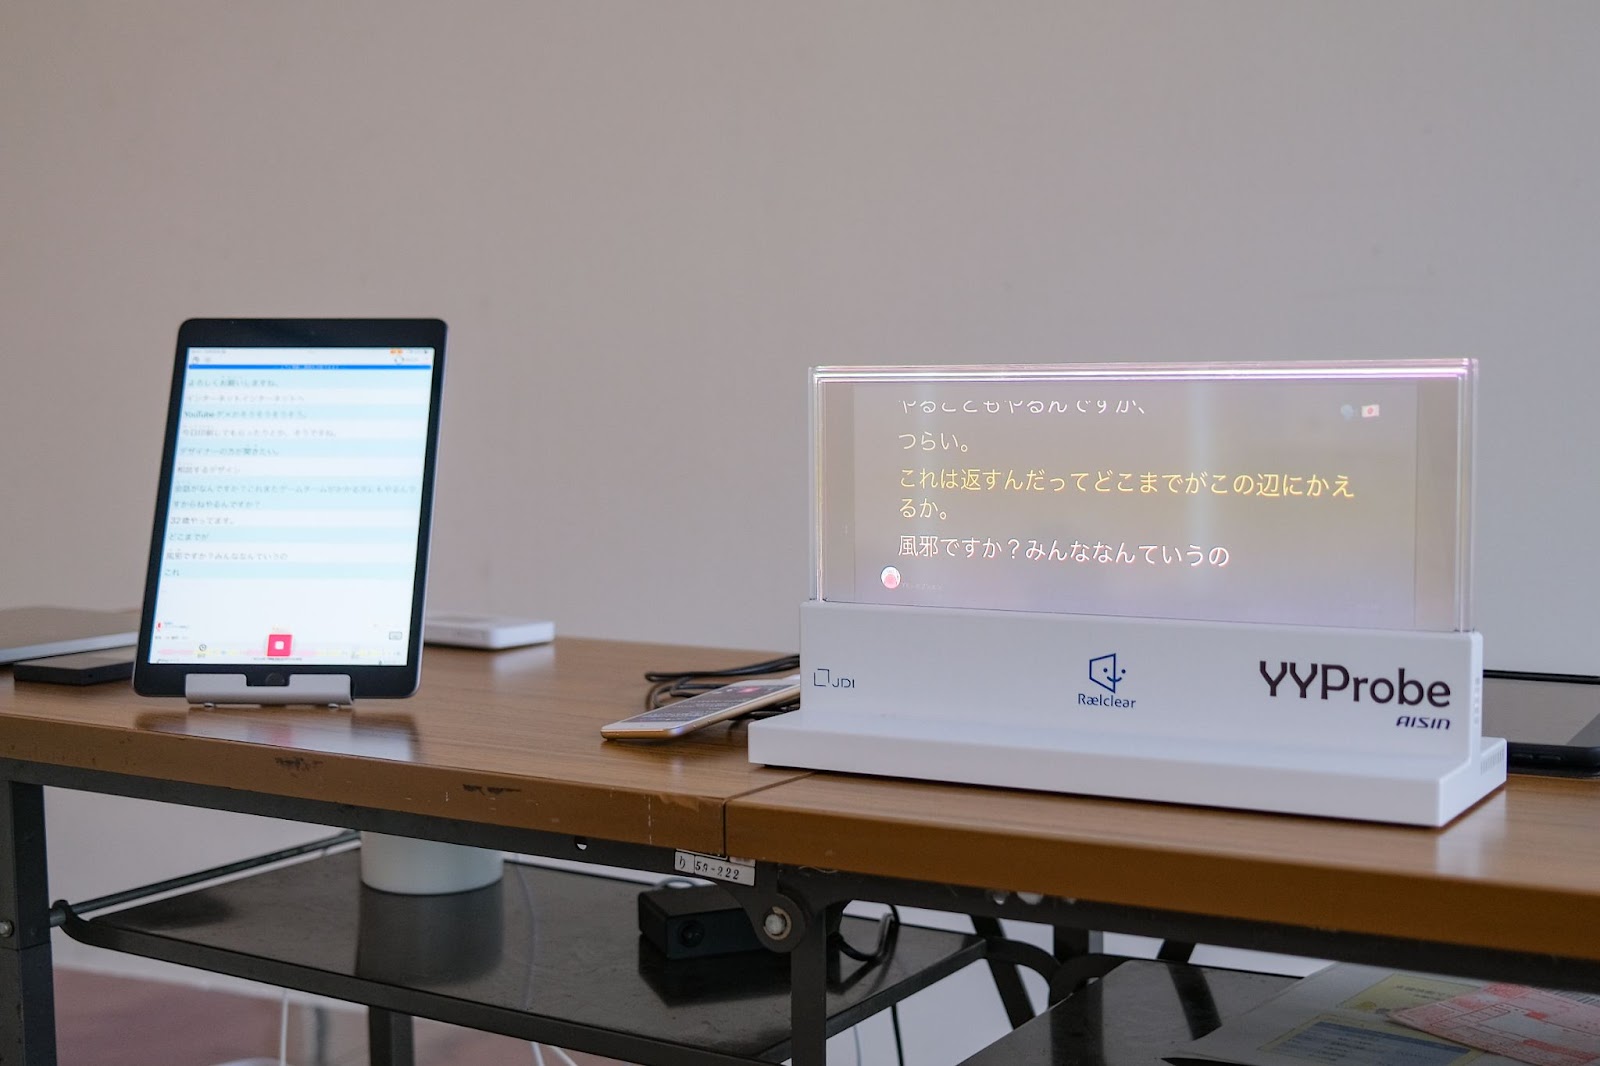 タブレットに表示された文章が、透明スクリーンのデバイスに表示されている。